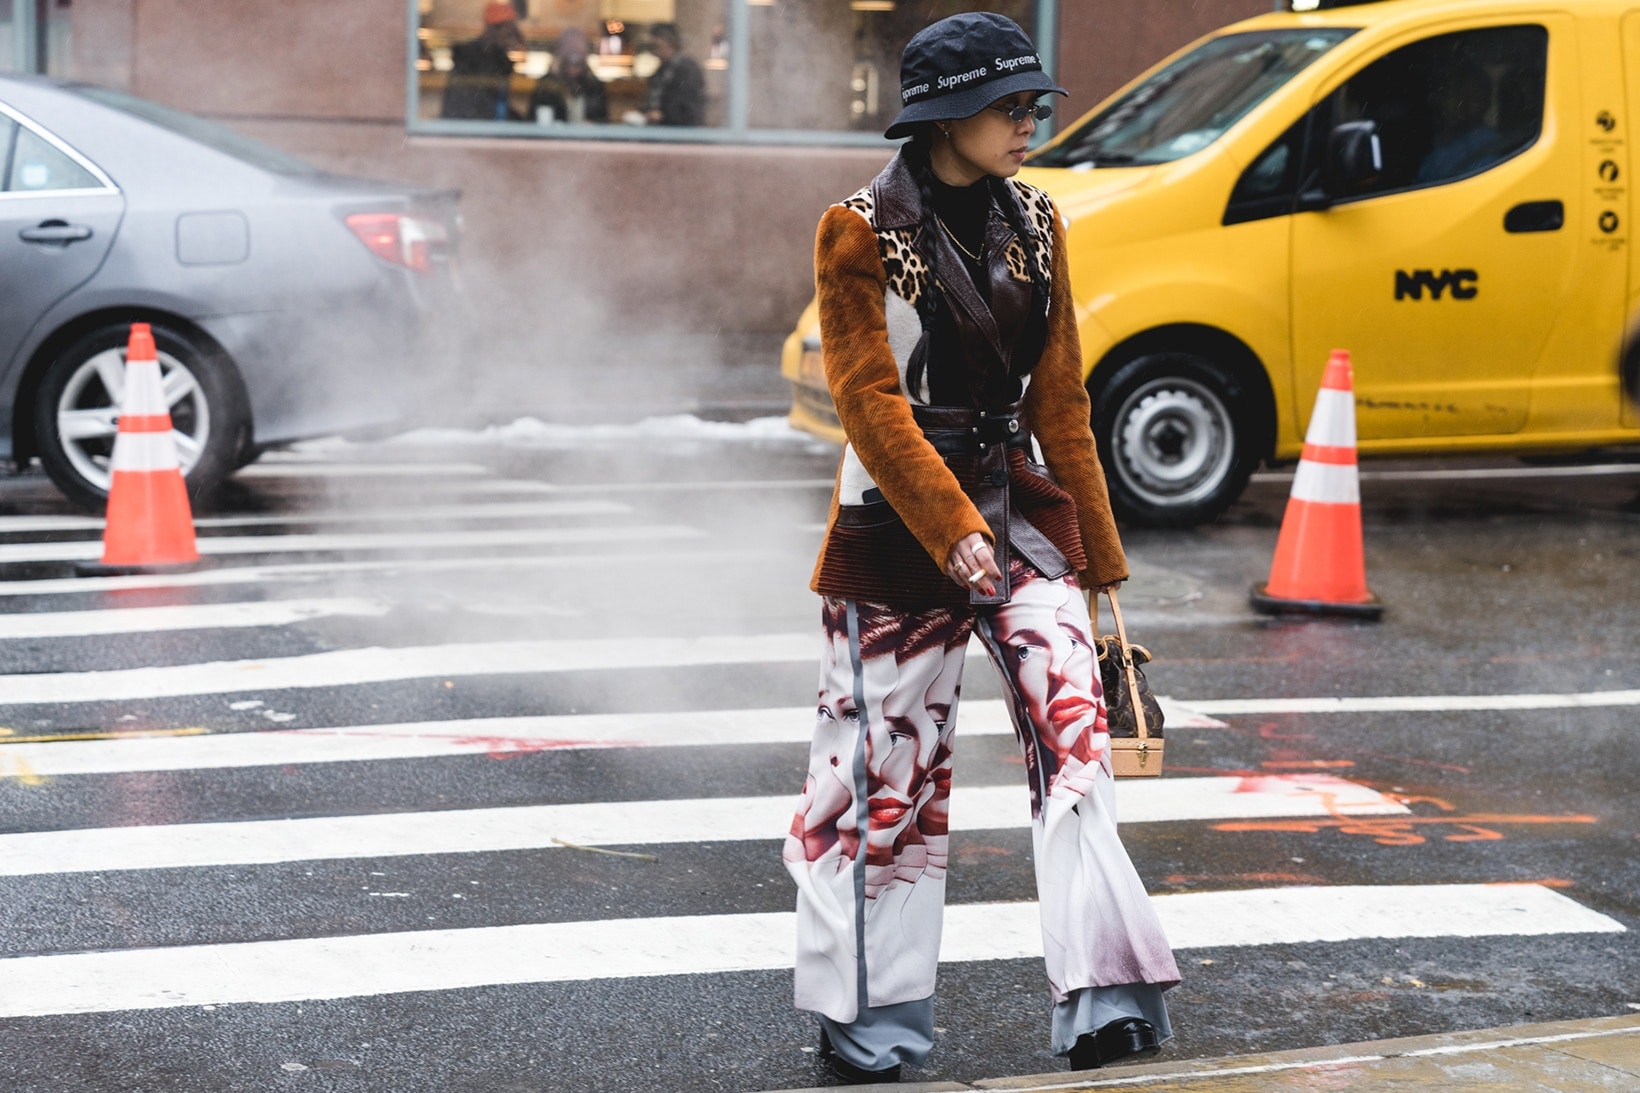 2018 가을, 겨울 뉴욕 남성 패션위크 거리 패션 streetsnaps new york fashion week mens fall winter 2018